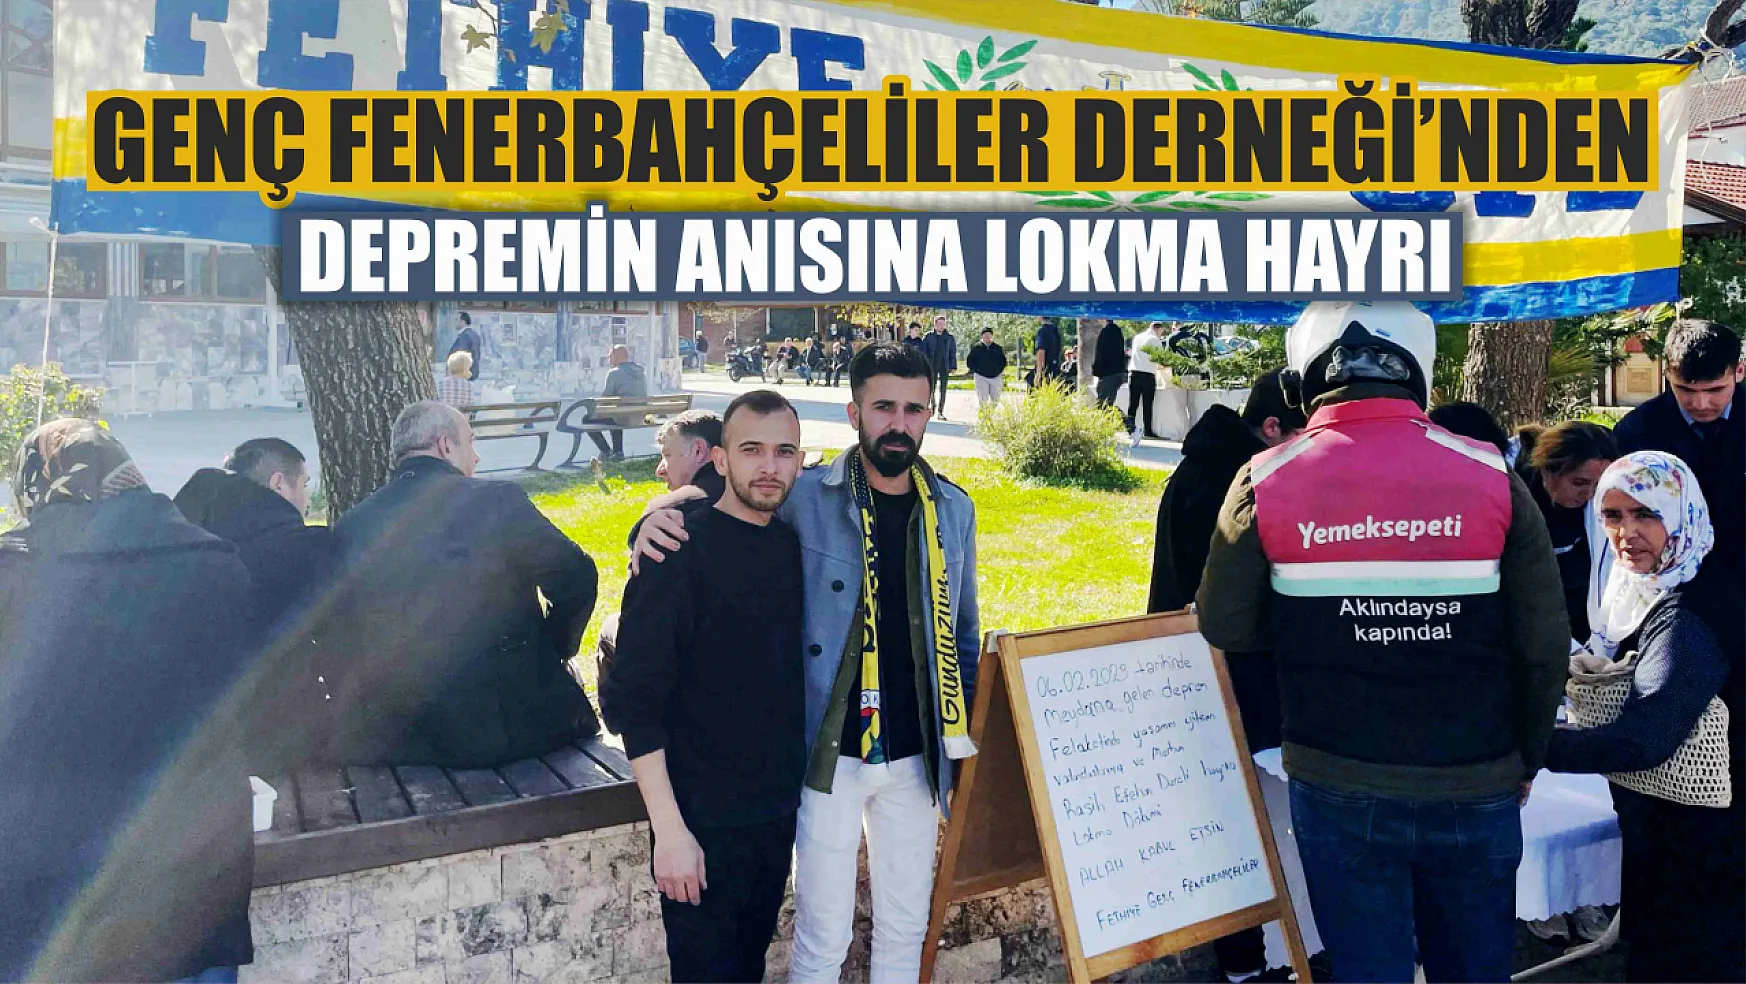 Fethiye Genç Fenerbahçeliler Derneği'nden Depremin Anısına Lokma Hayrı